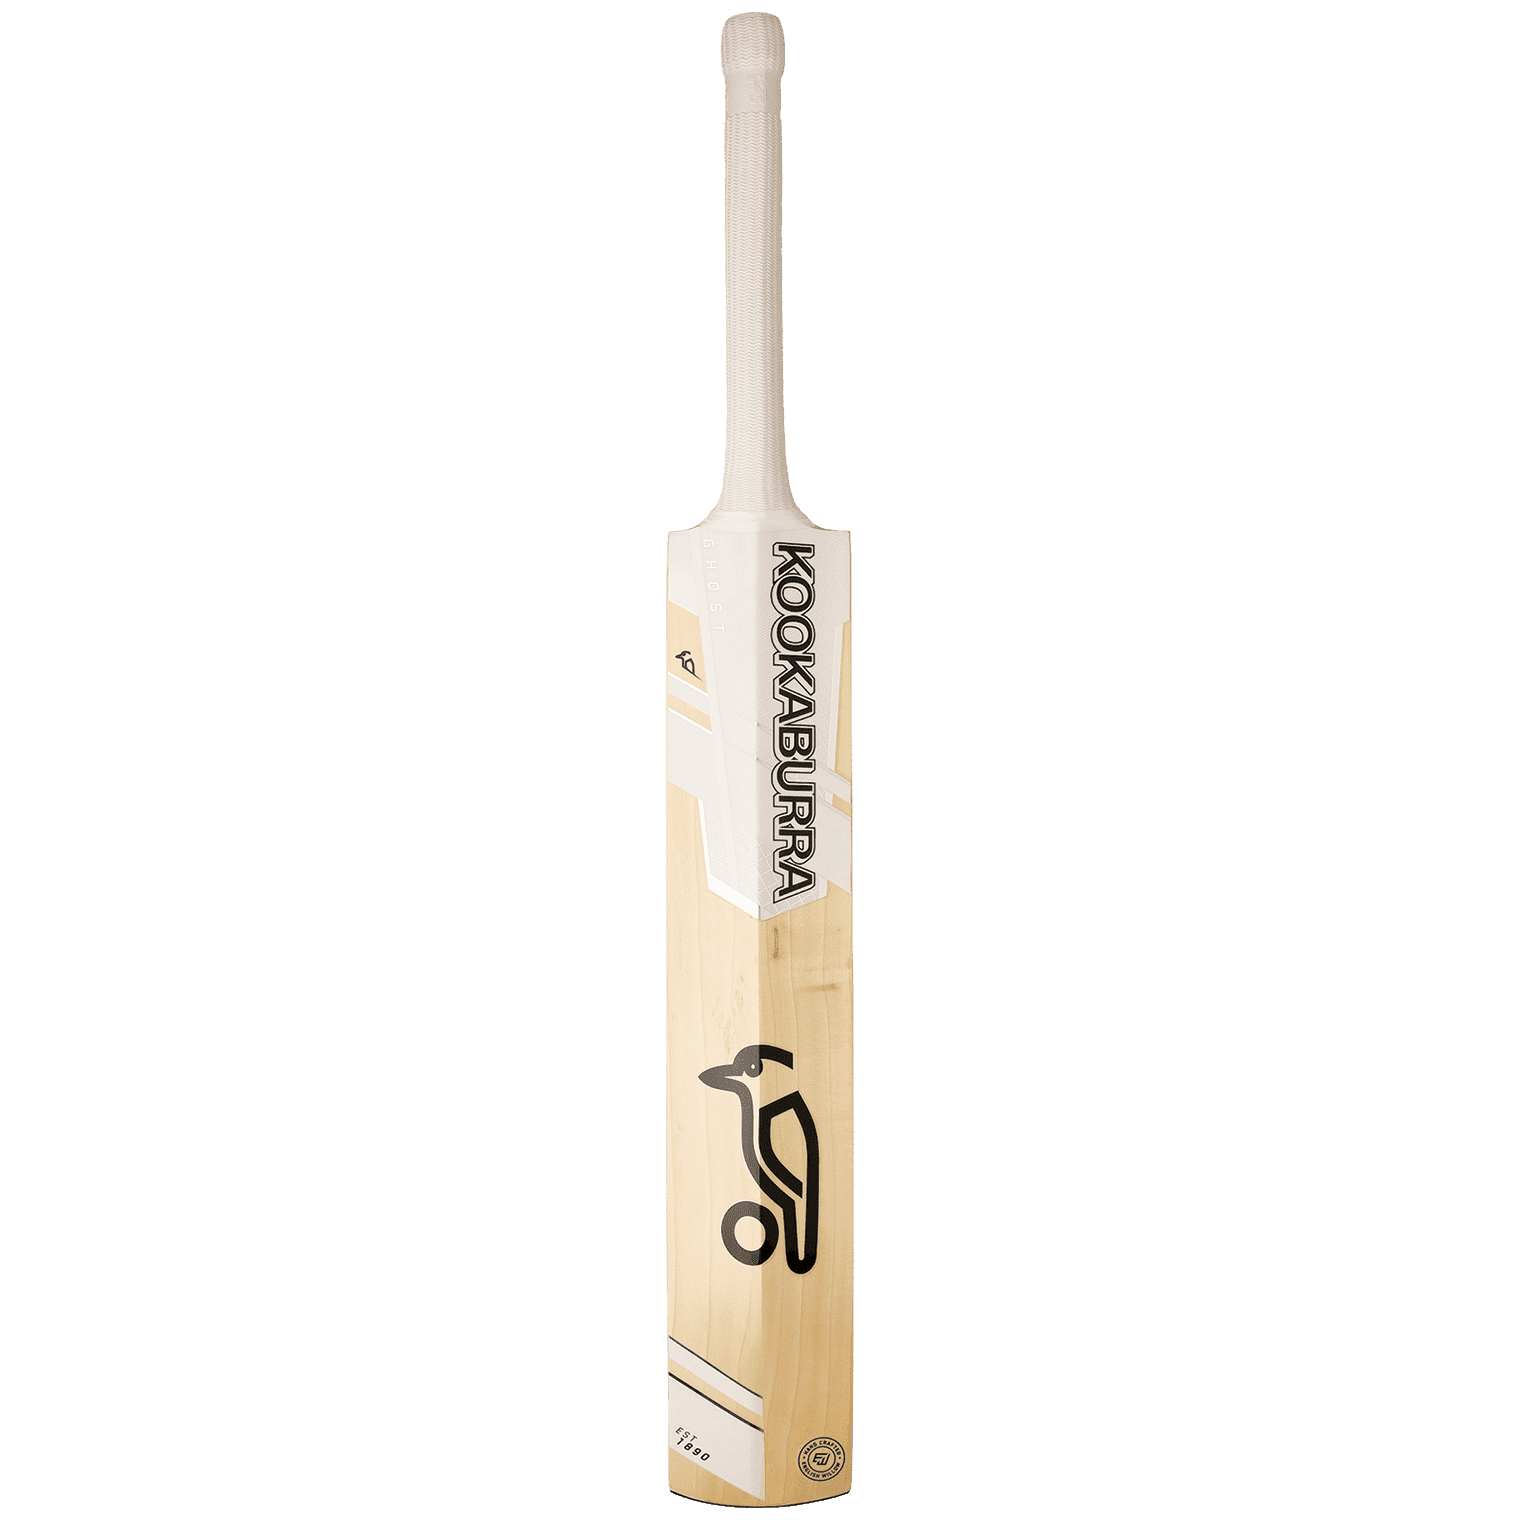 Kookaburra Cricket Bats LB / 2'9 Kookaburra Ghost Pro 4.0 Adult Cricket Bat 2021